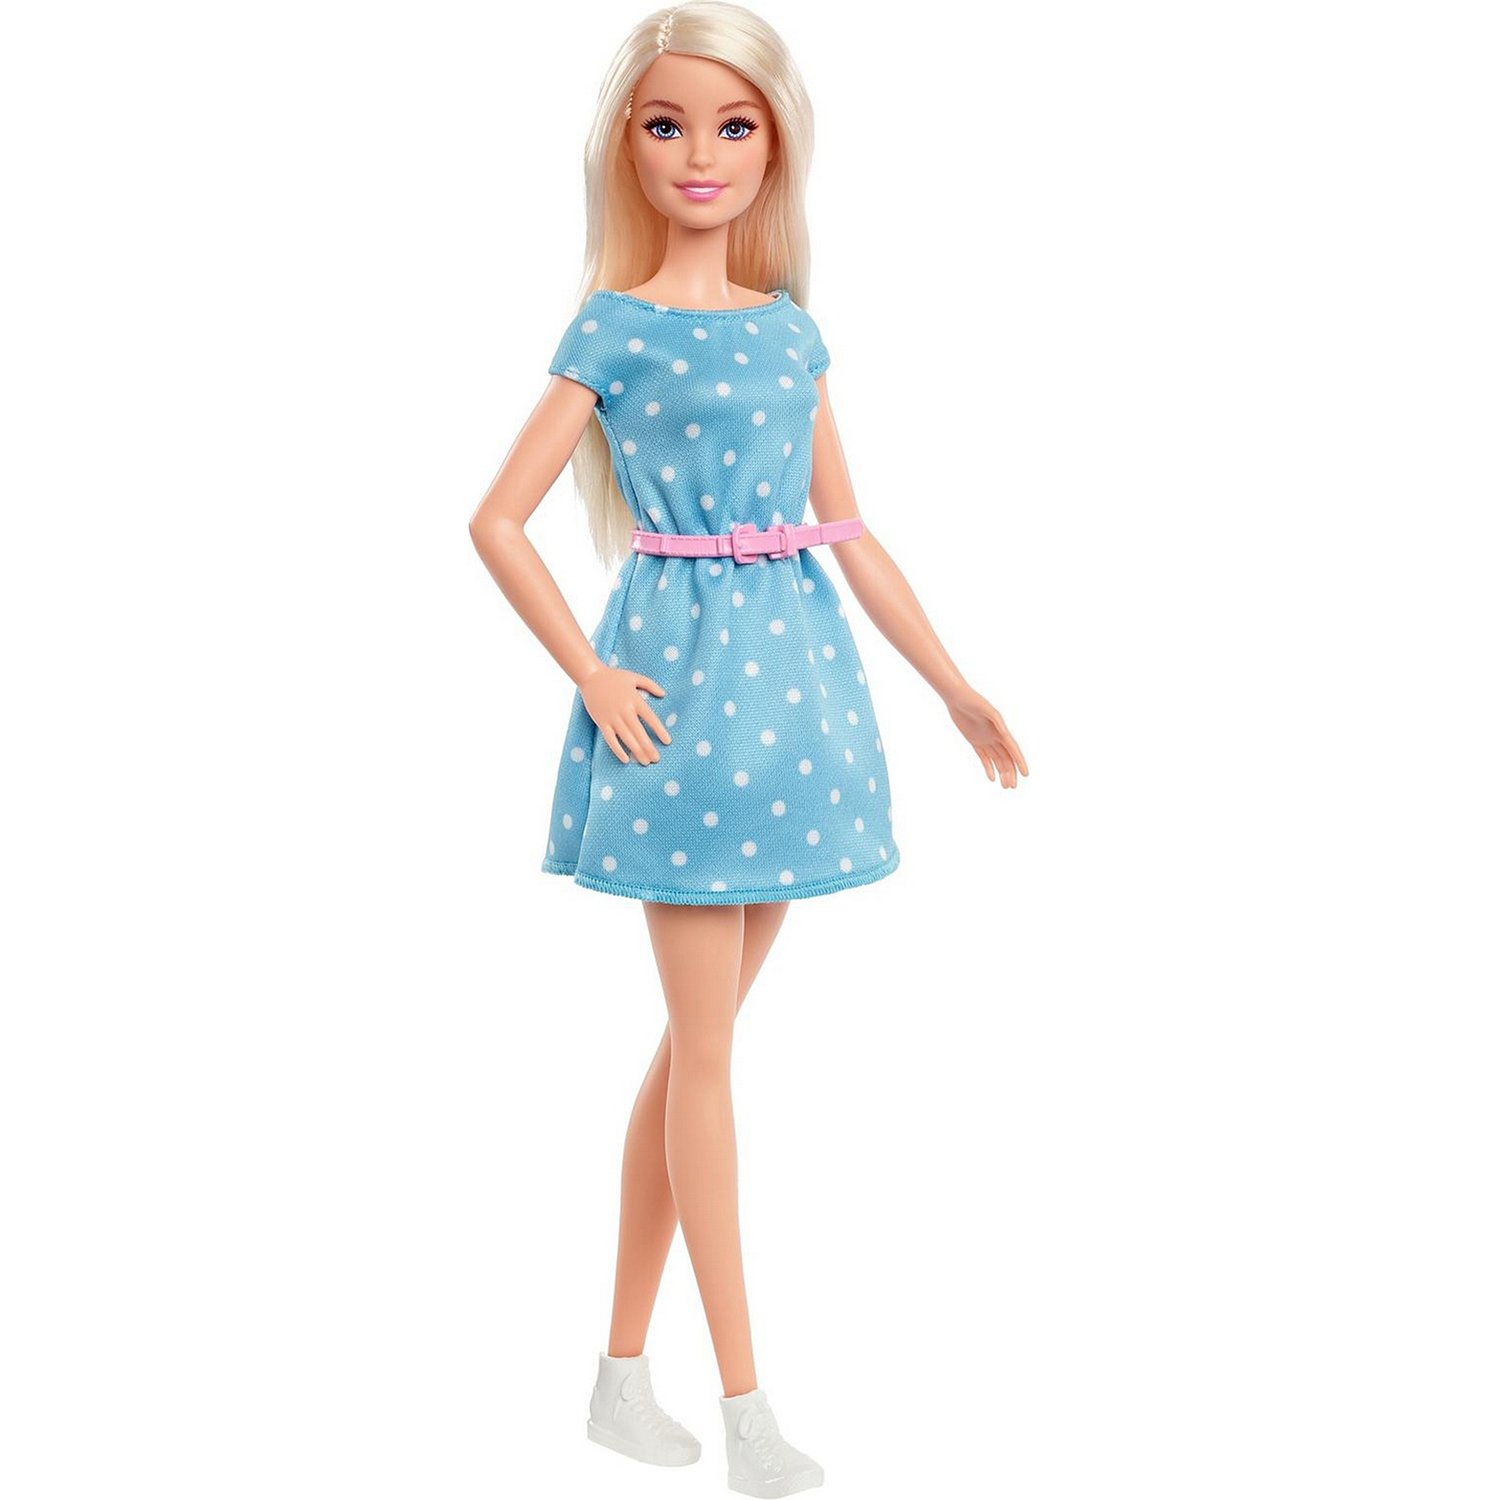 Набор игровой Barbie Малибу с аксессуарами GYG39